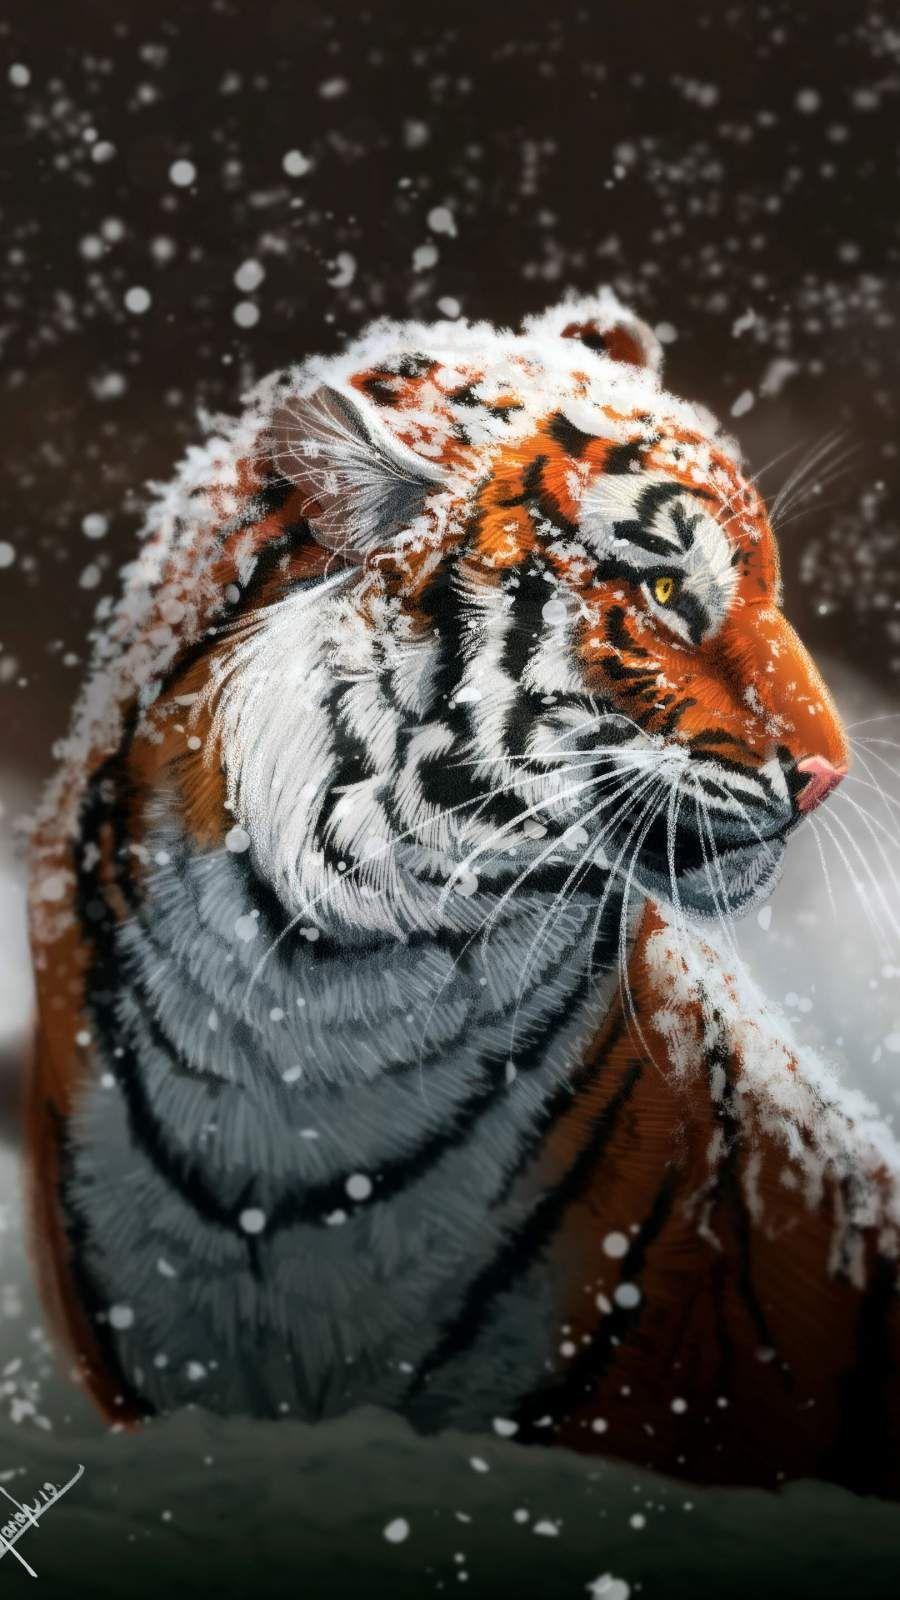 100 Free Siberian Tiger  Tiger Images  Pixabay